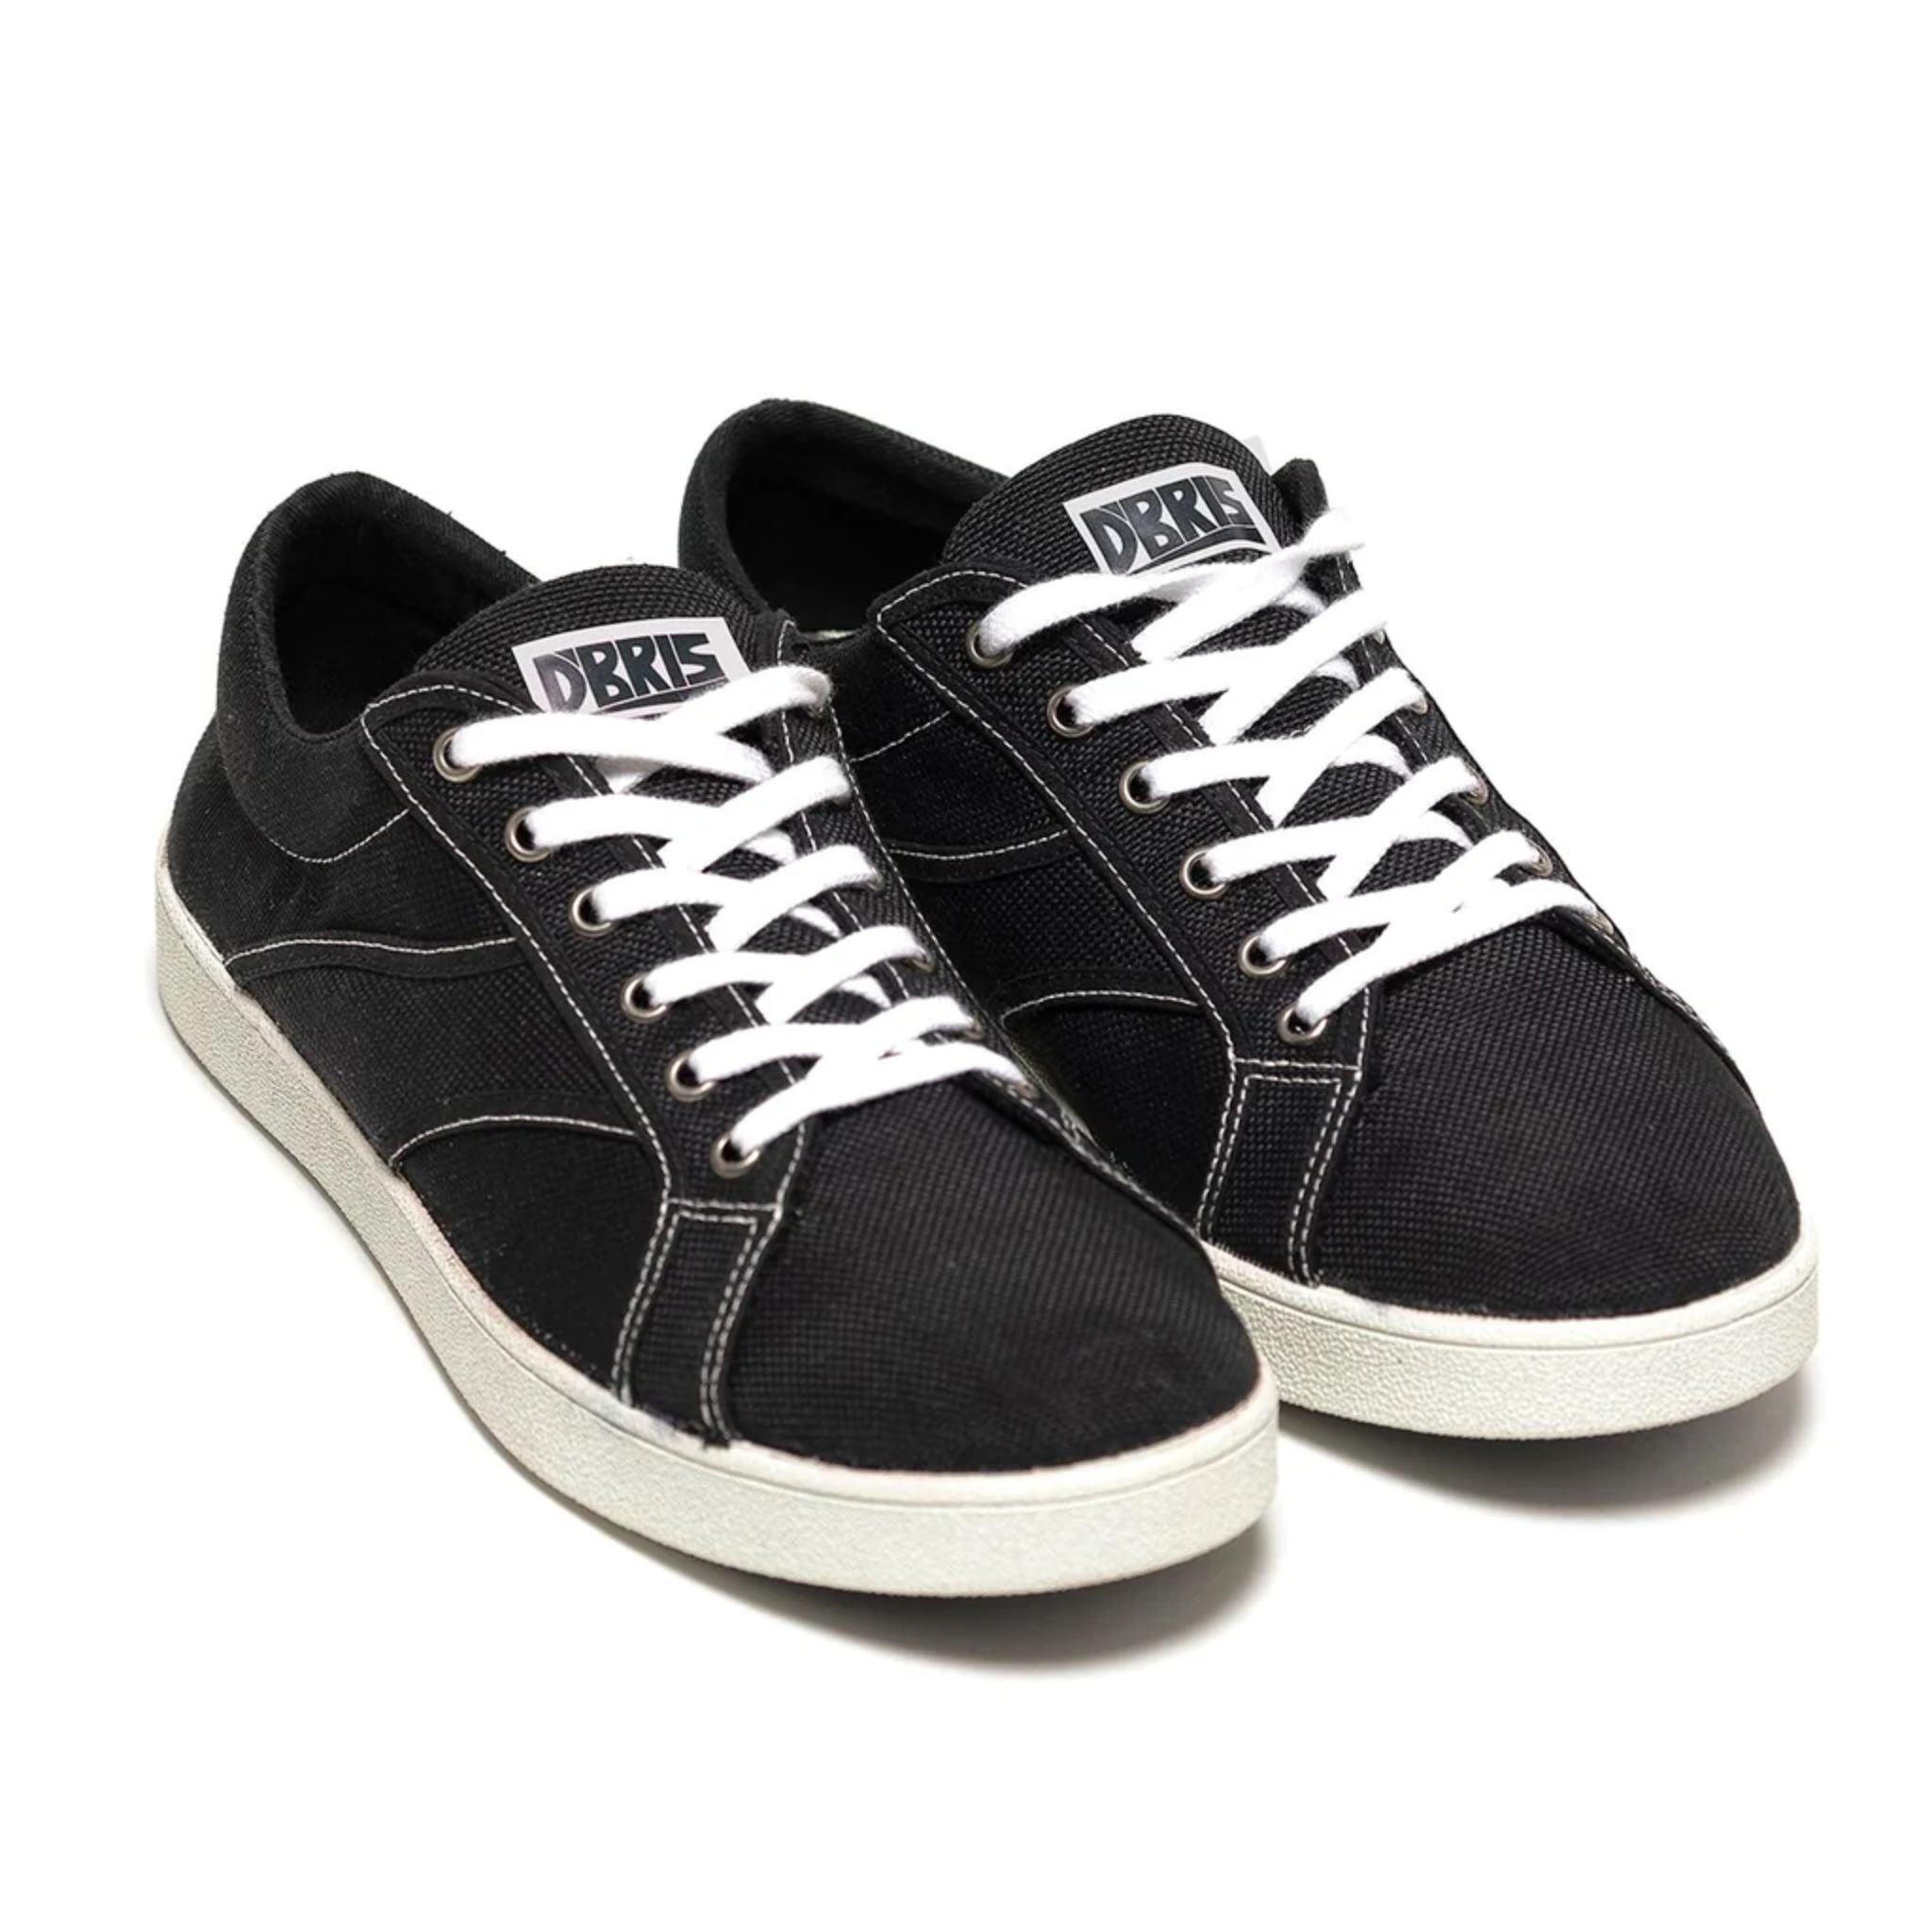 Dbris Original Shoe - Black And White